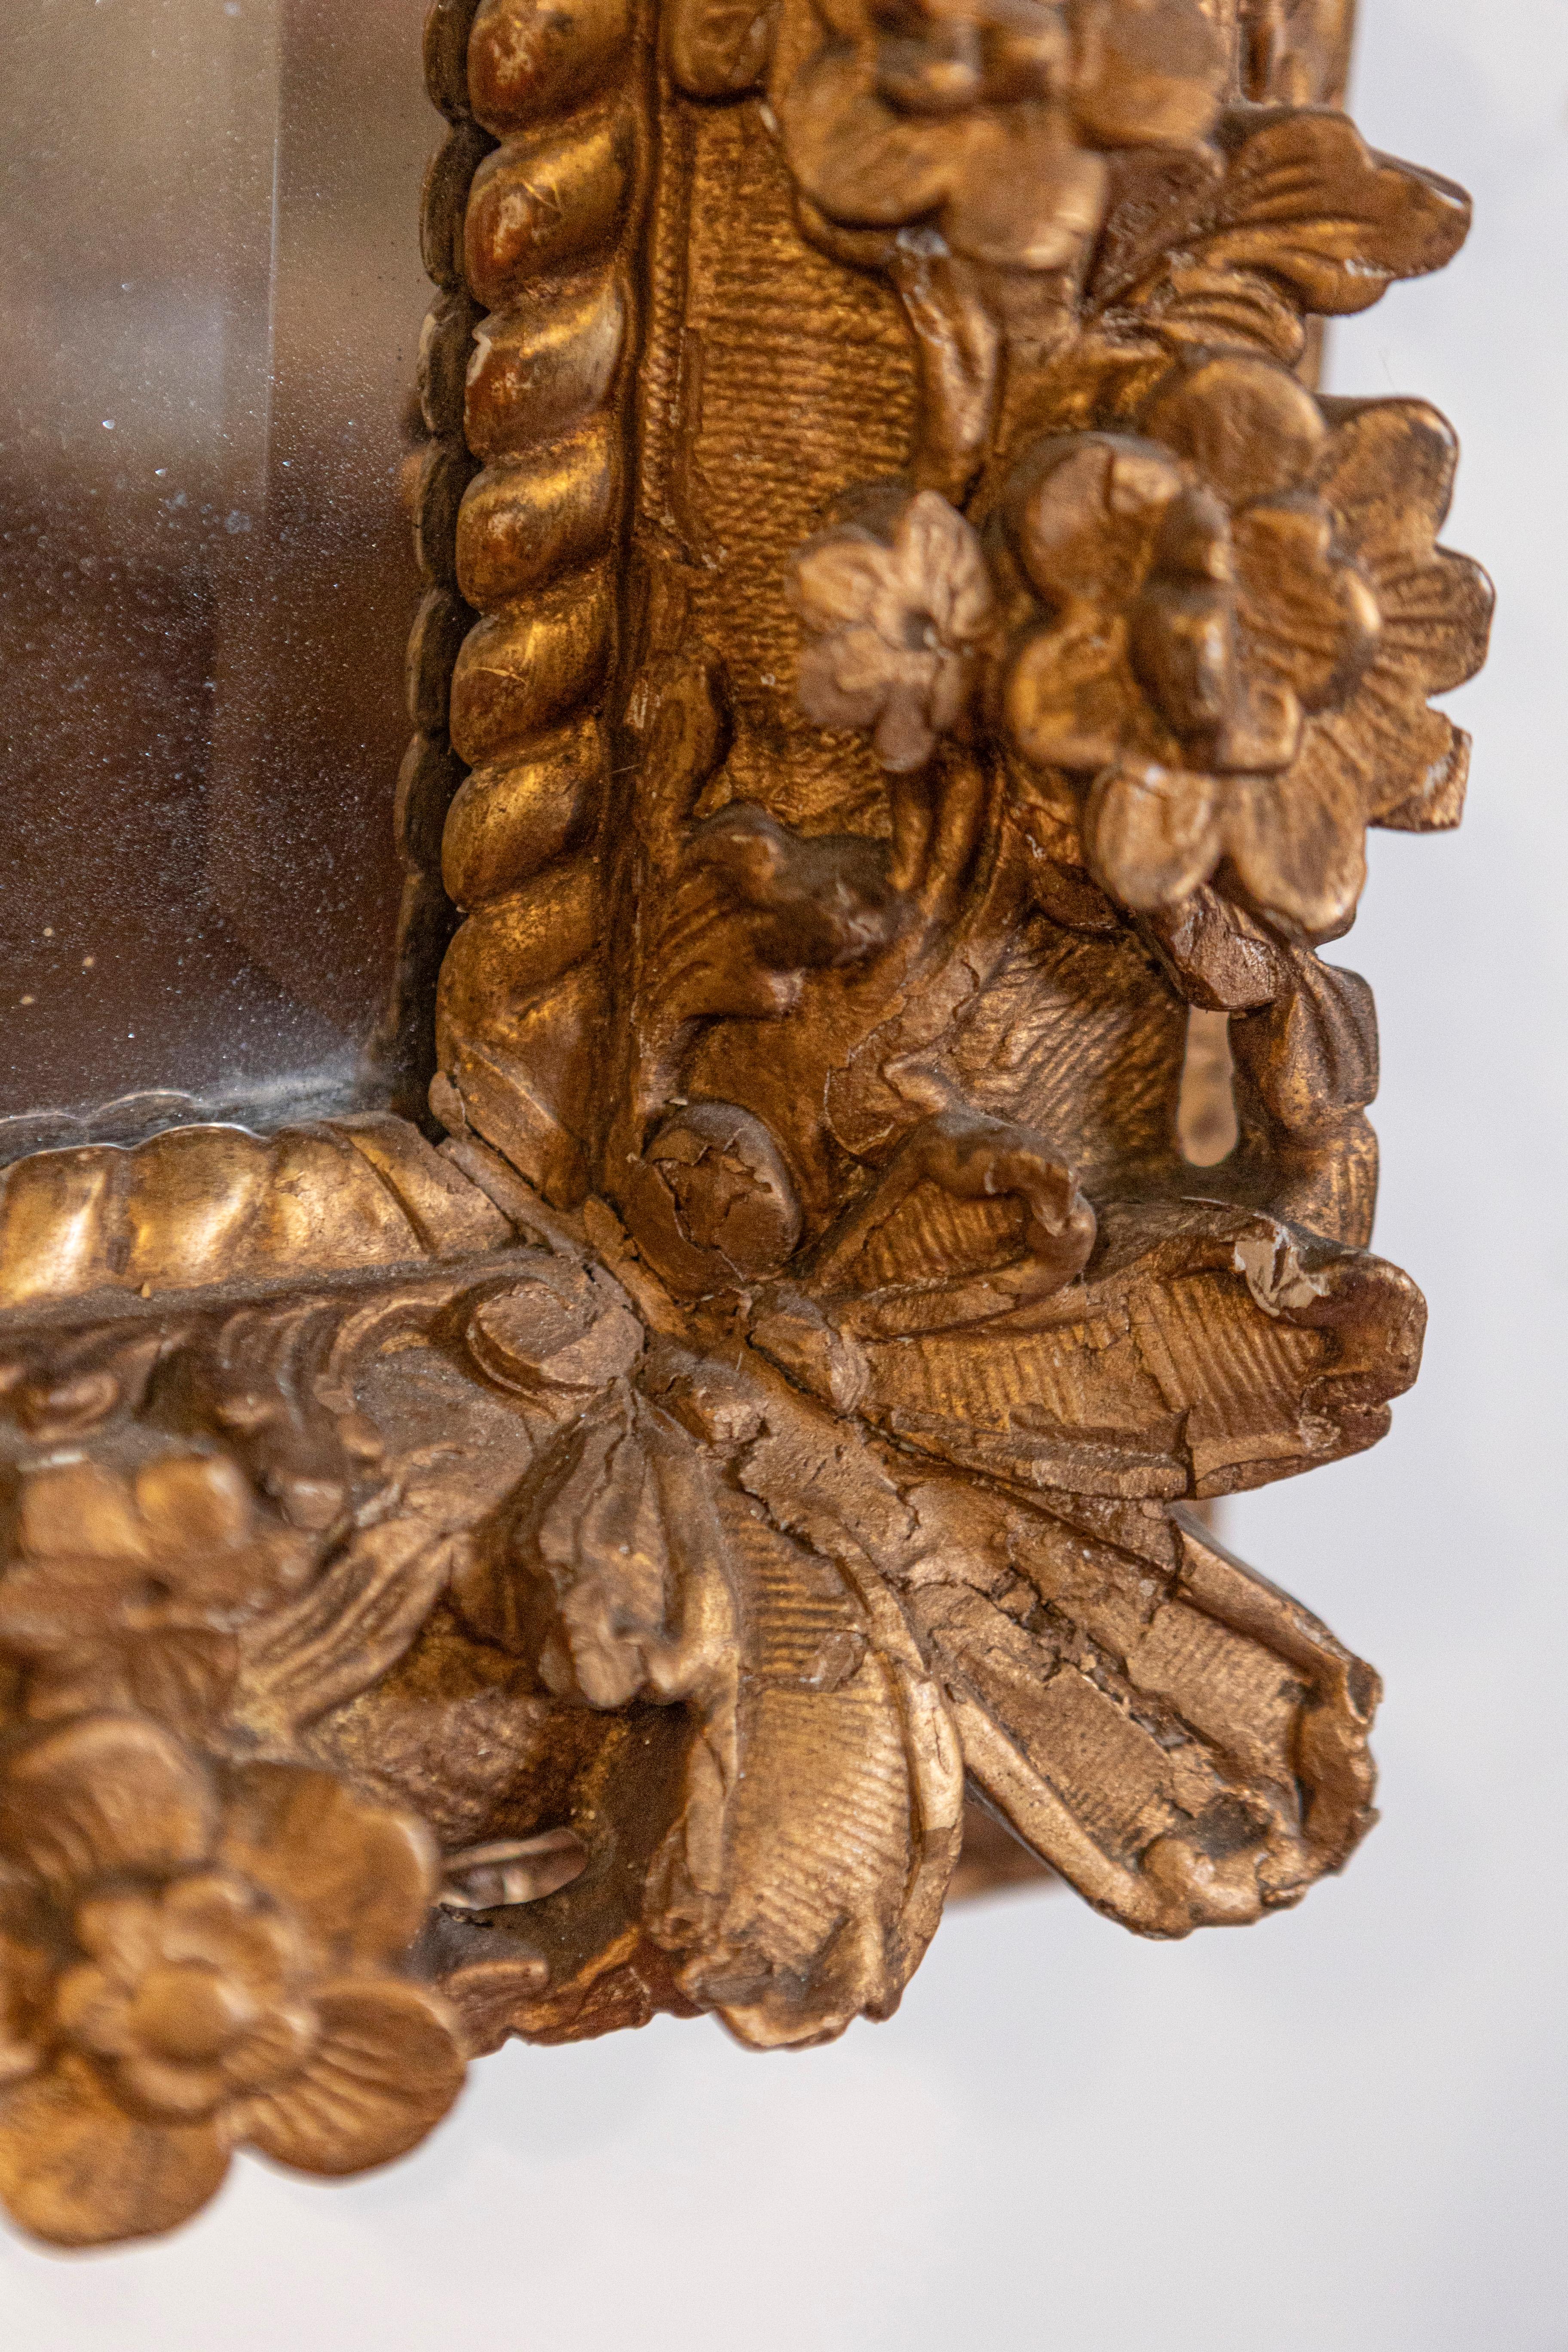 Ce miroir sculpté français de la fin du XVIIIe siècle, de style Régence, présente un cadre rectangulaire en bois doré, orné de délicats motifs floraux le long des angles. La qualité de la sculpture est indéniable. Le cadre intérieur, plus proche du